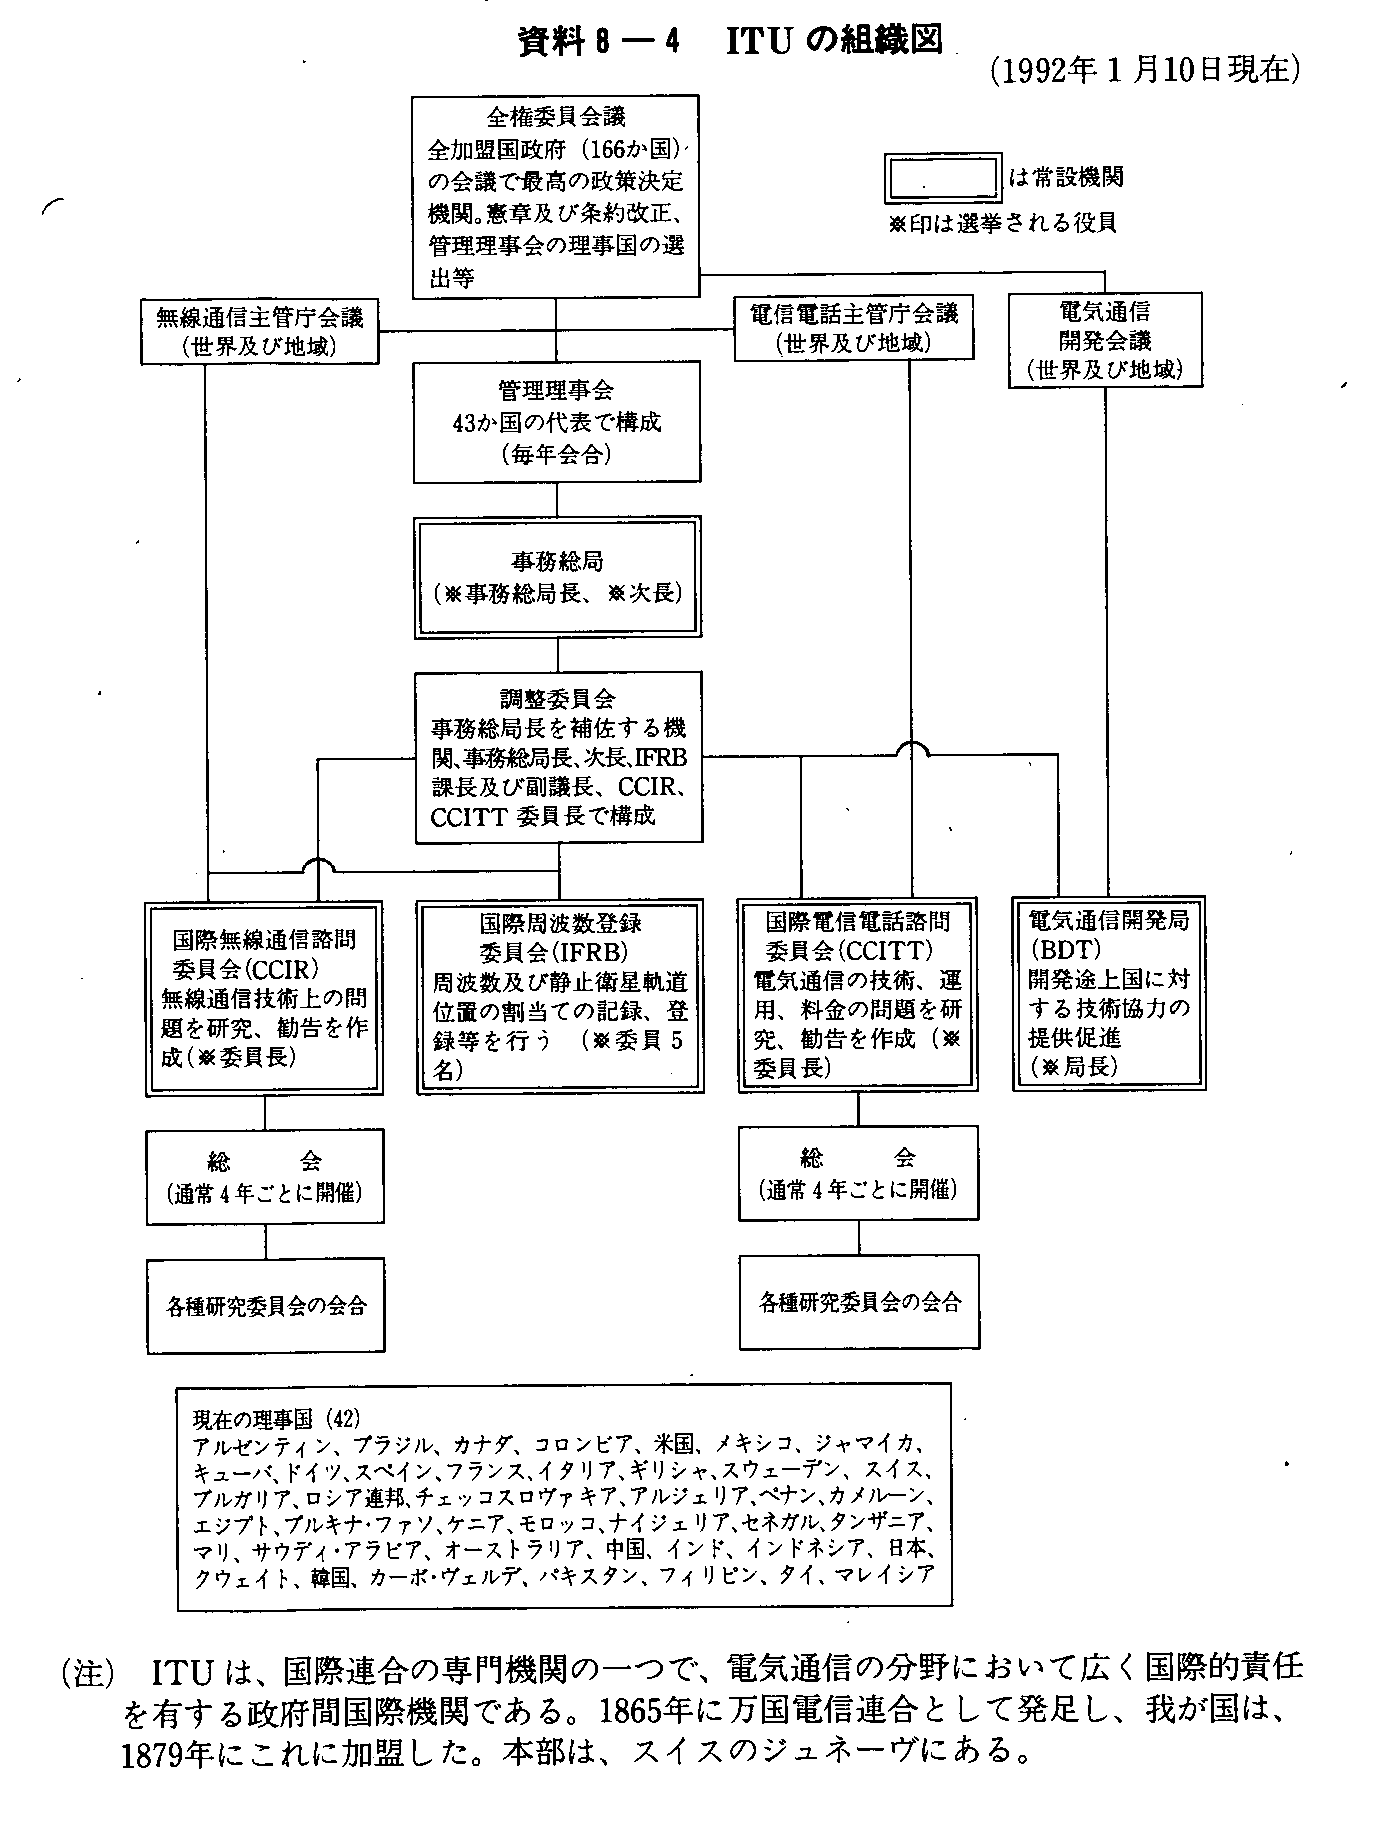 資料8-4 ITUの組織図(1992年1月10日現在)